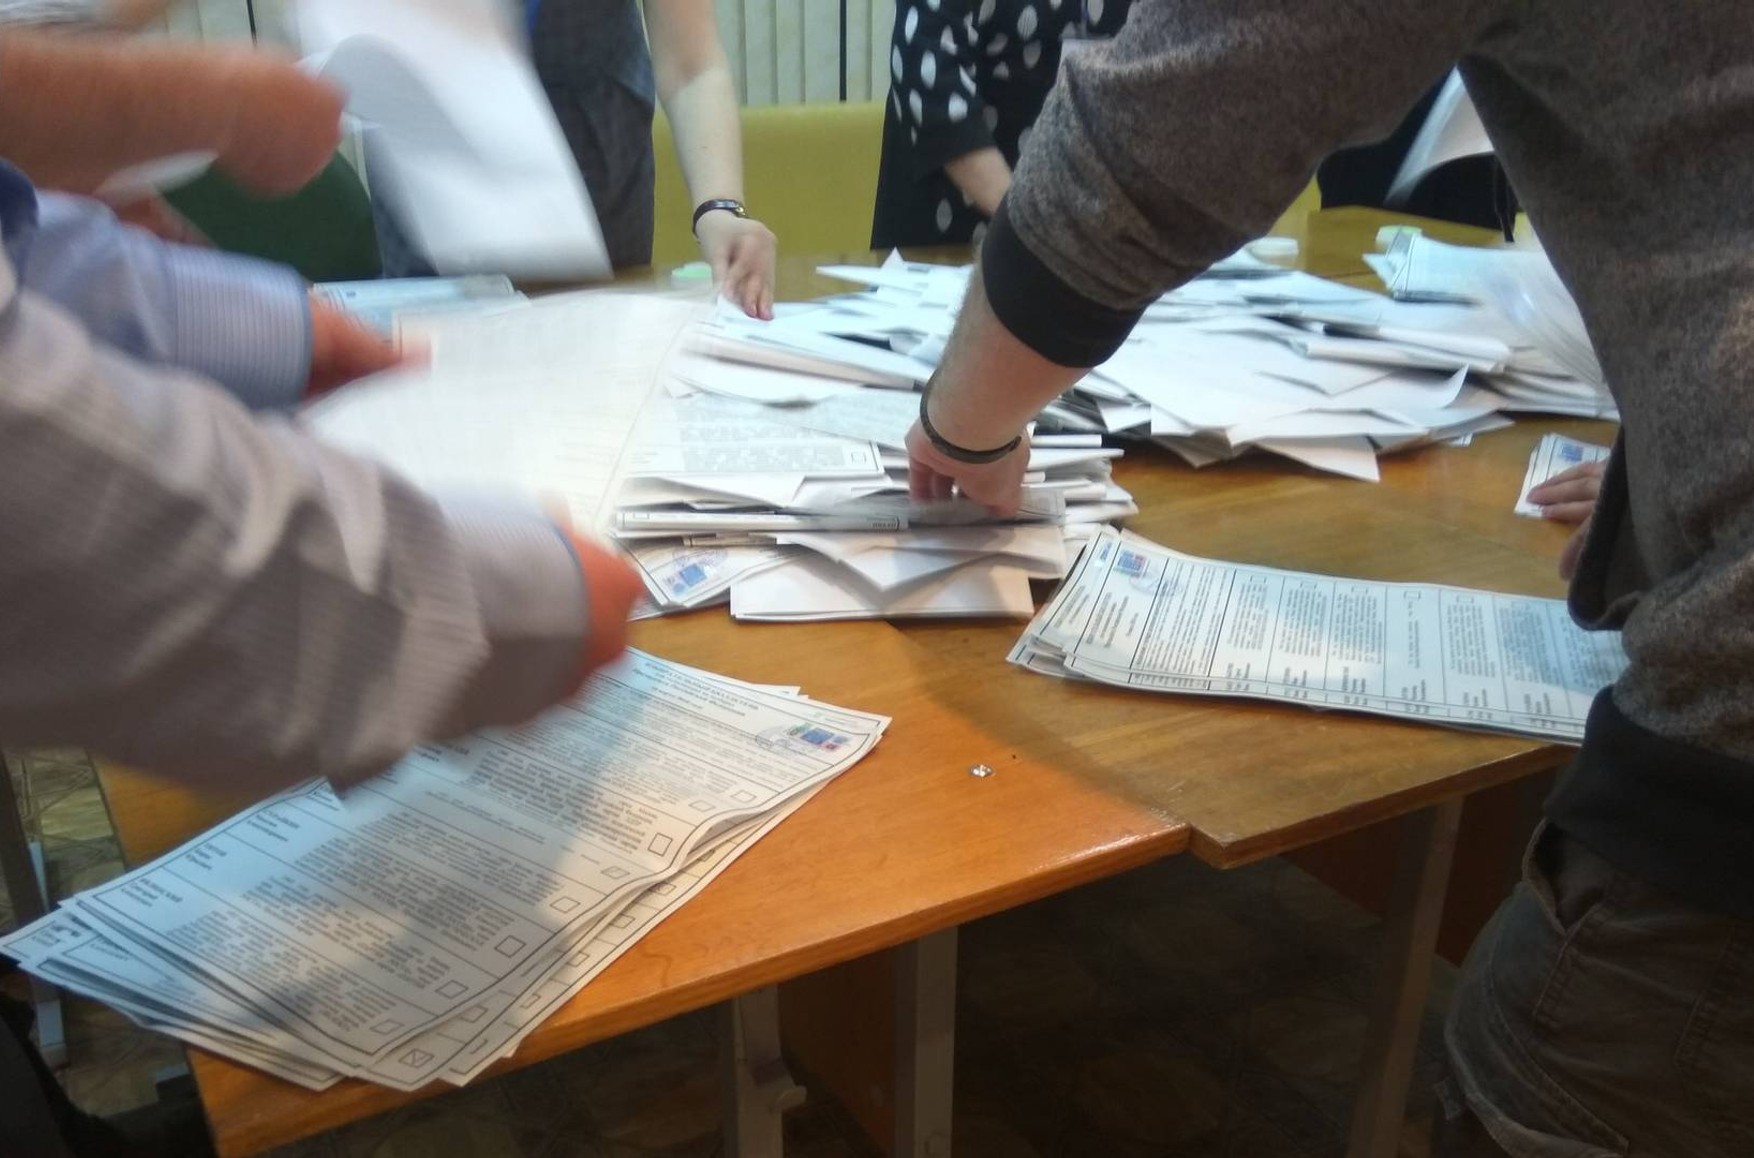 В Рязани решили нарушить тайну голосования и написать заявление на избирателя, «оскорбившего» ВС РФ на бюллетене